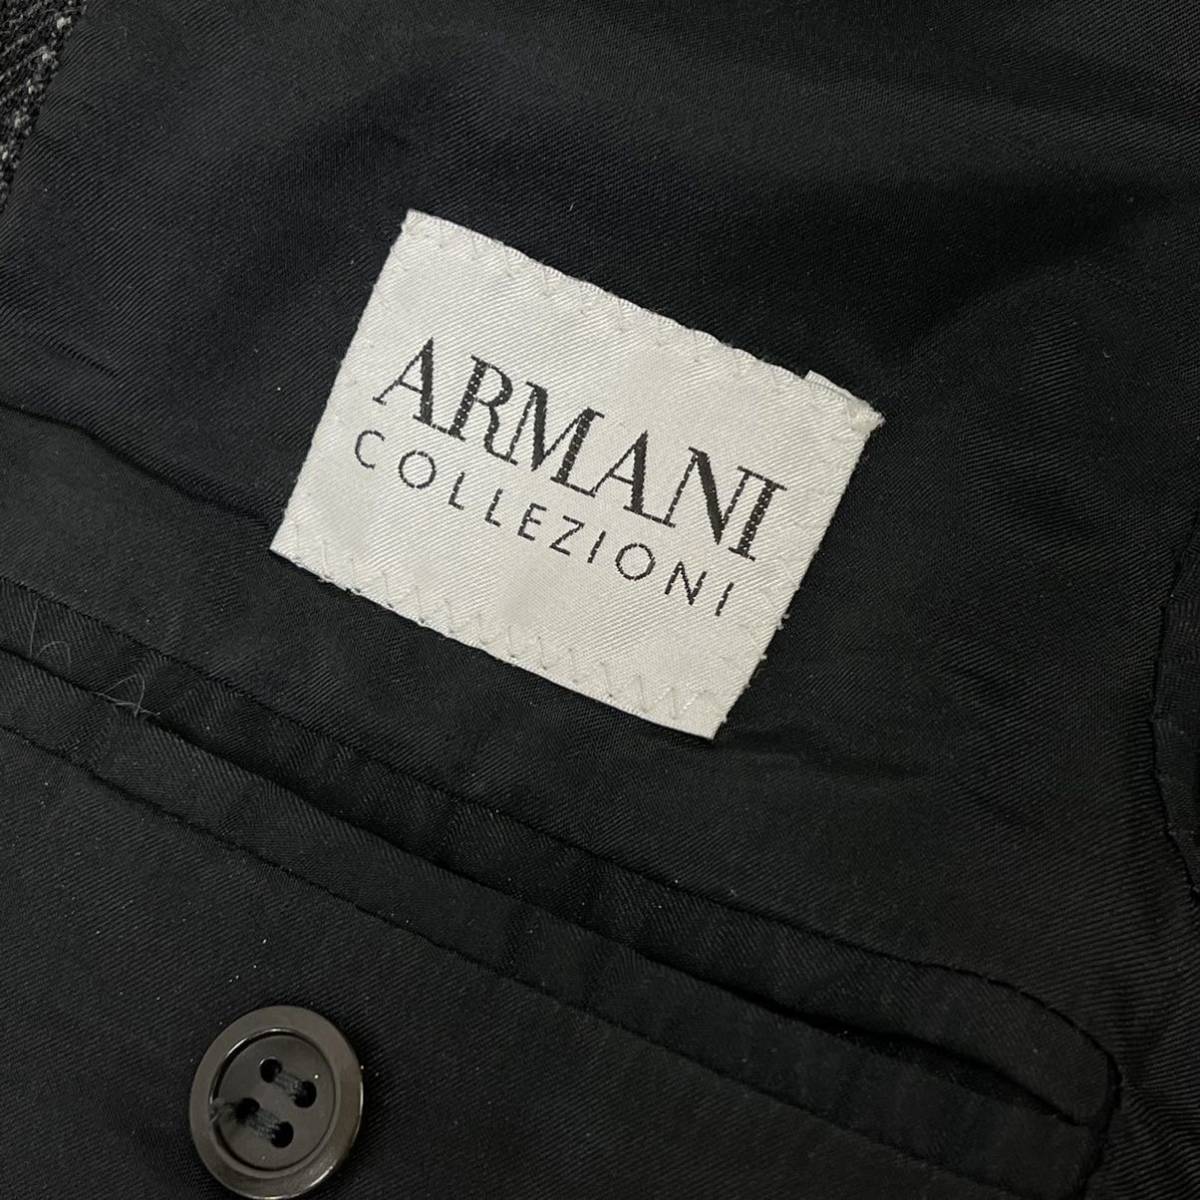 ARMANI COLLEZIONI アルマーニ コレッツォーニ ウール ストライプ 1B 総裏 テーラードジャケット＆スラックスパンツ  セットアップスーツ